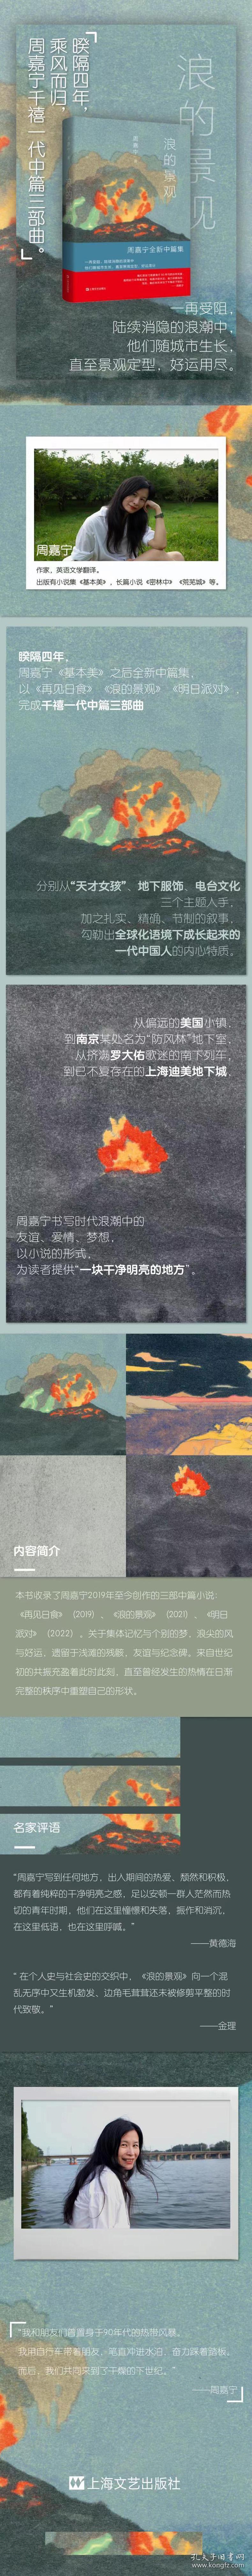 浪的景观周嘉宁上海文艺出版社